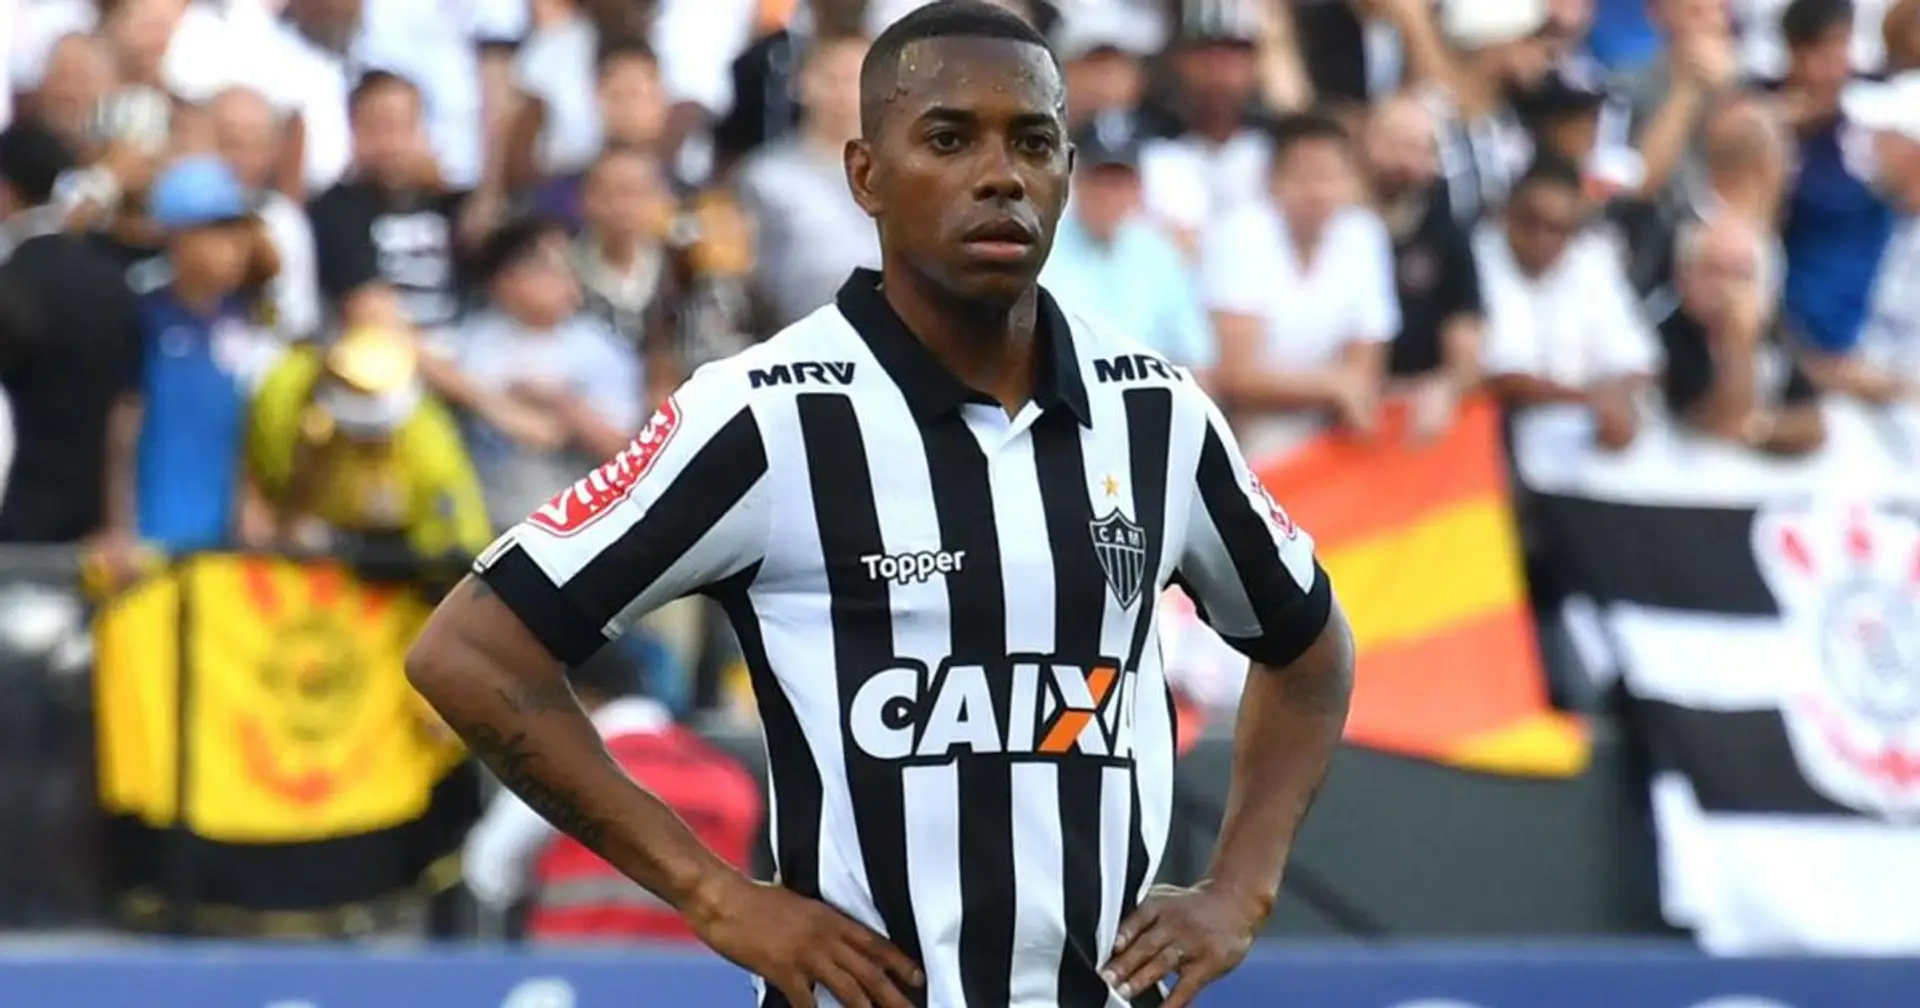 L'ancien attaquant du Real Madrid, Robinho, rejoint Santos pour aider son club d'enfance à survivre - et obtient la résiliation de son contrat 6 jours après avoir été accusé de viol